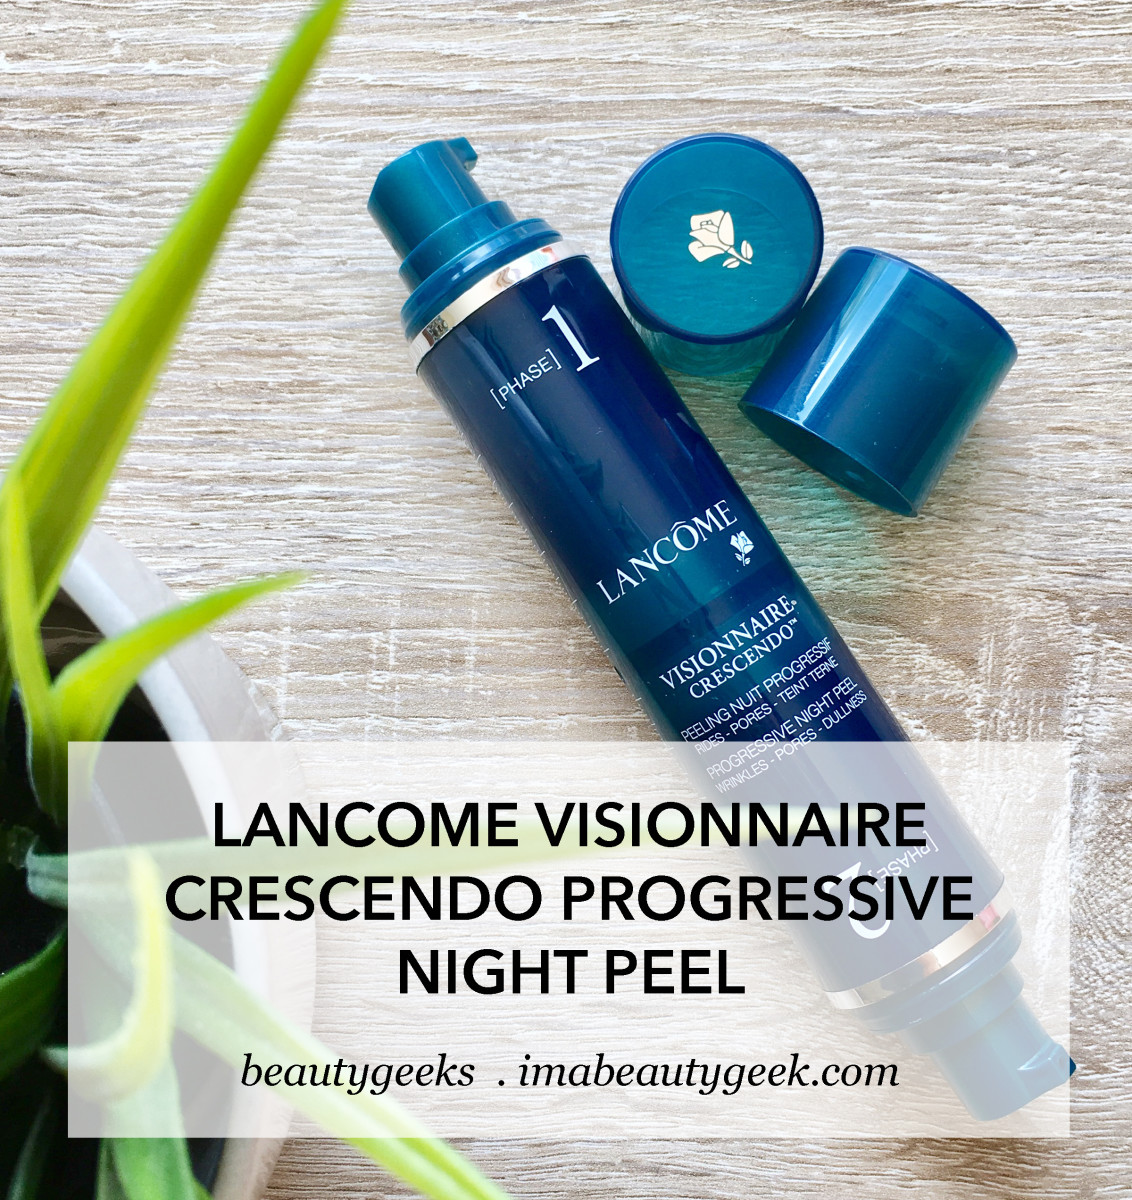 Lancome Visionnaire Crescendo Progressive Night Peel treatment